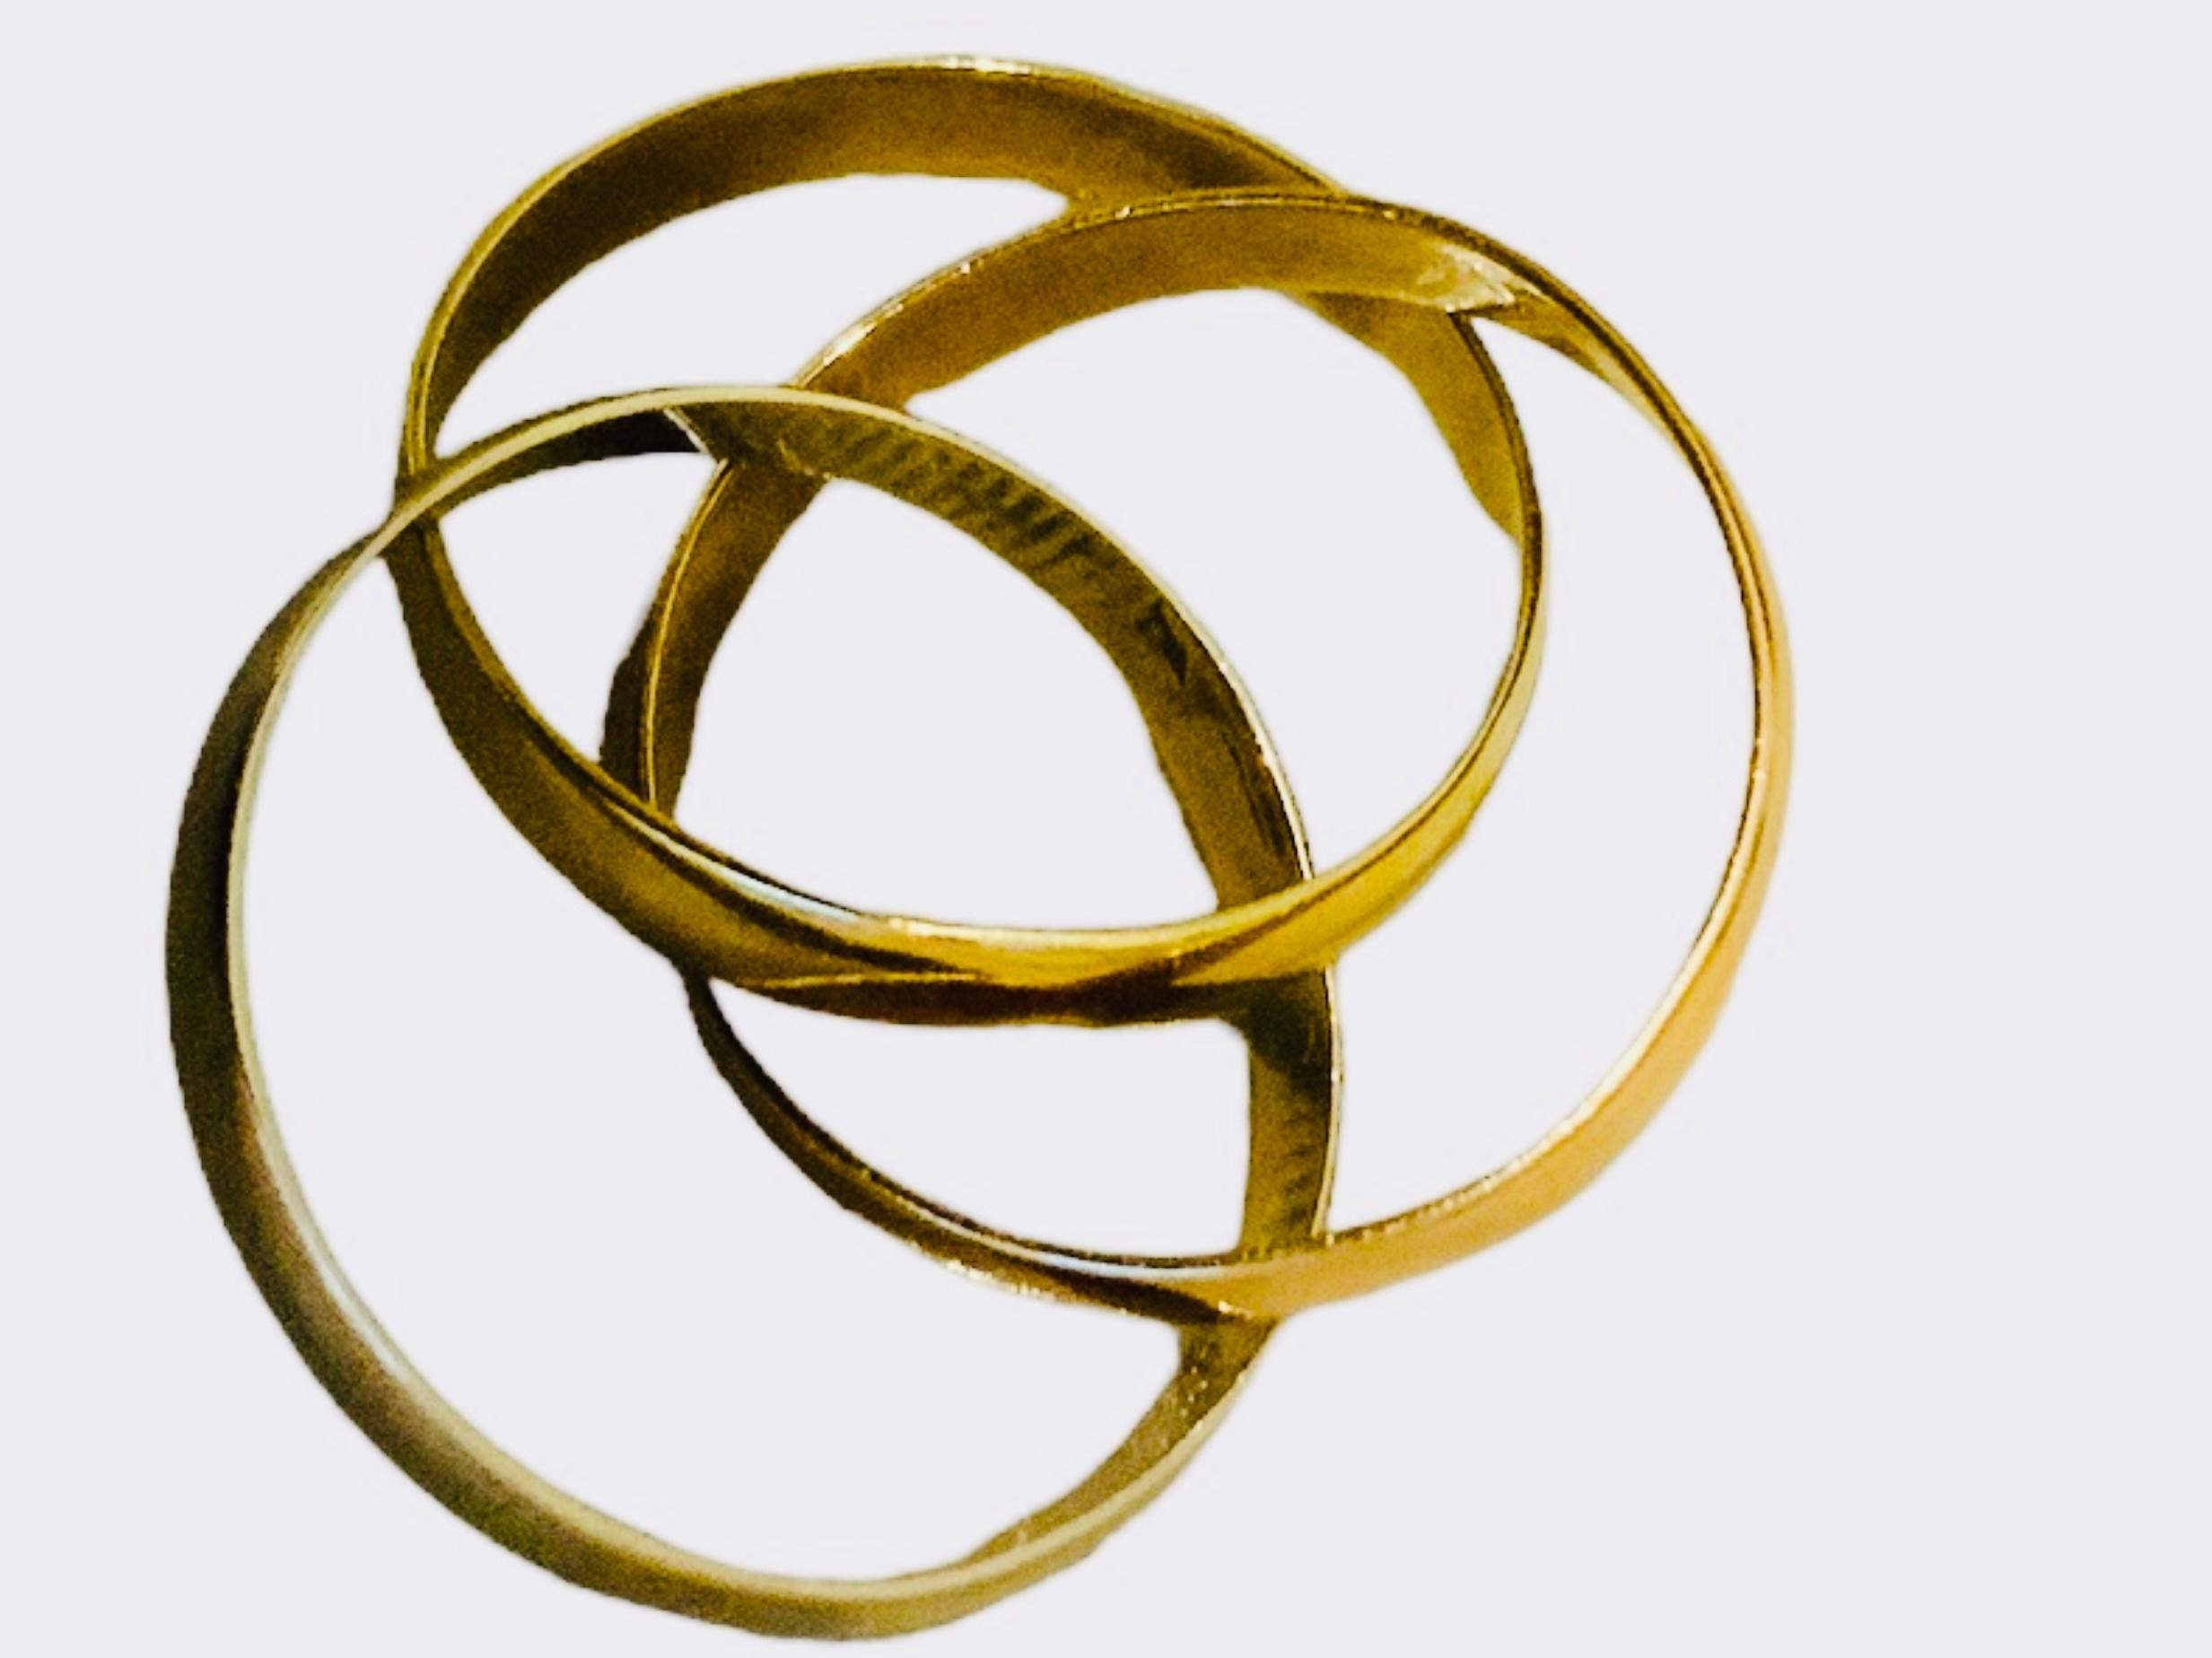 Il s'agit d'un jeu de trois bracelets en or 14K. Whiting représente trois bandes de forme ronde avec différentes nuances d'or (jaune, blanc et rose) entrelacées ensemble. Ils symbolisent la Sainte Trinité - le Père, le Fils et le Saint-Esprit.